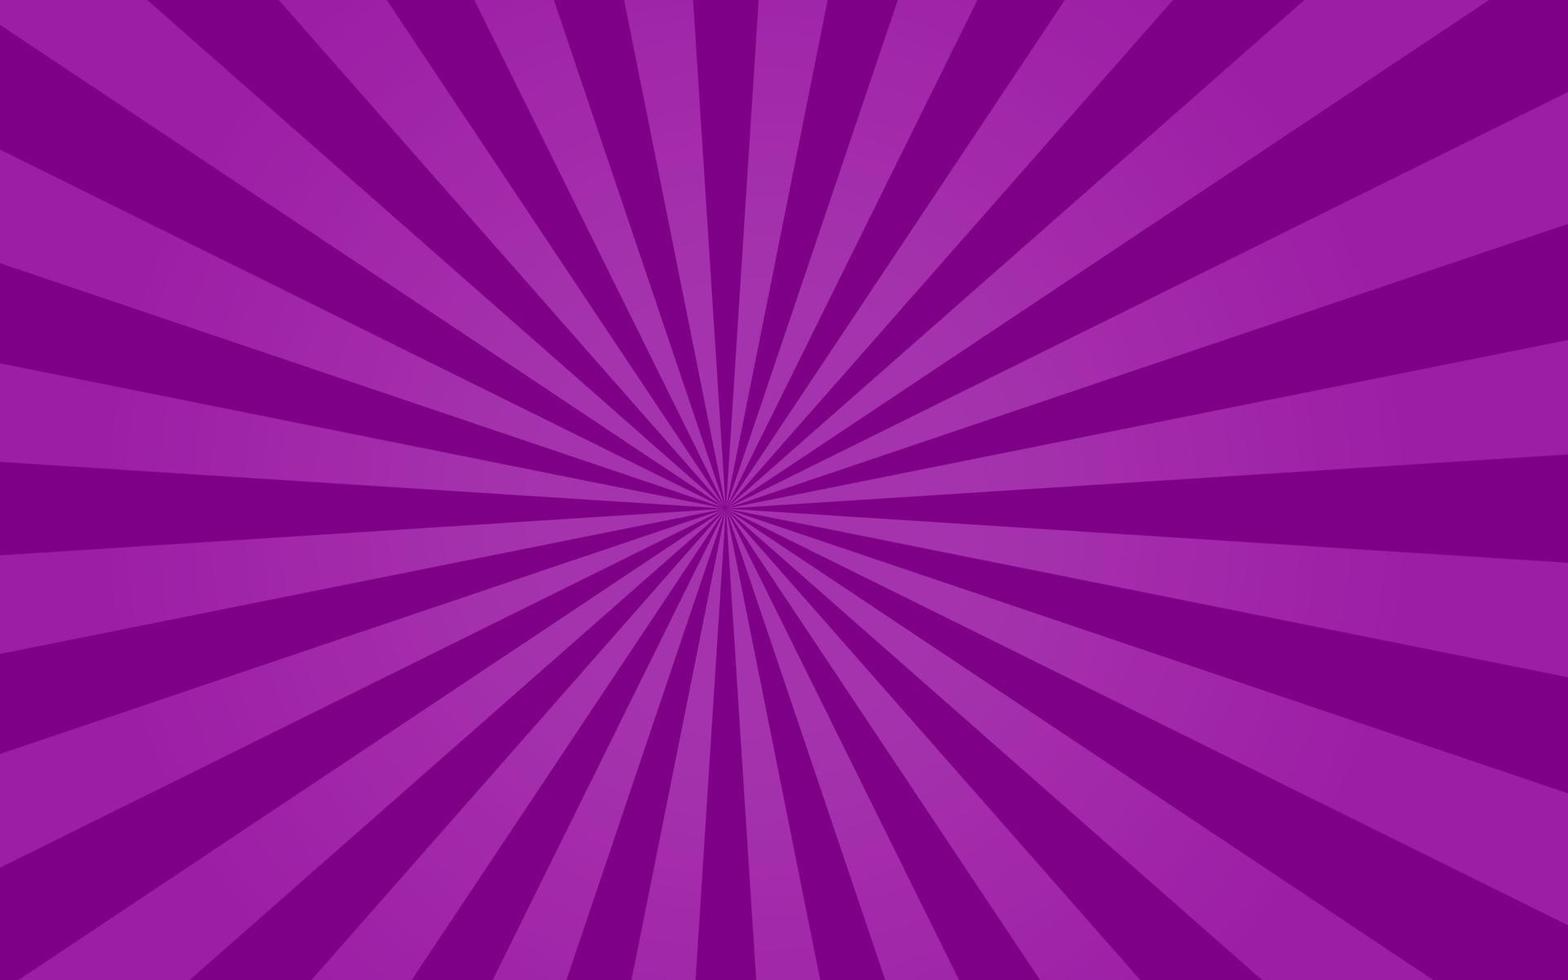 zonnestralen retro vintage stijl op paarse achtergrond, sunburst patroon achtergrond. stralen. zomer banner vectorillustratie vector